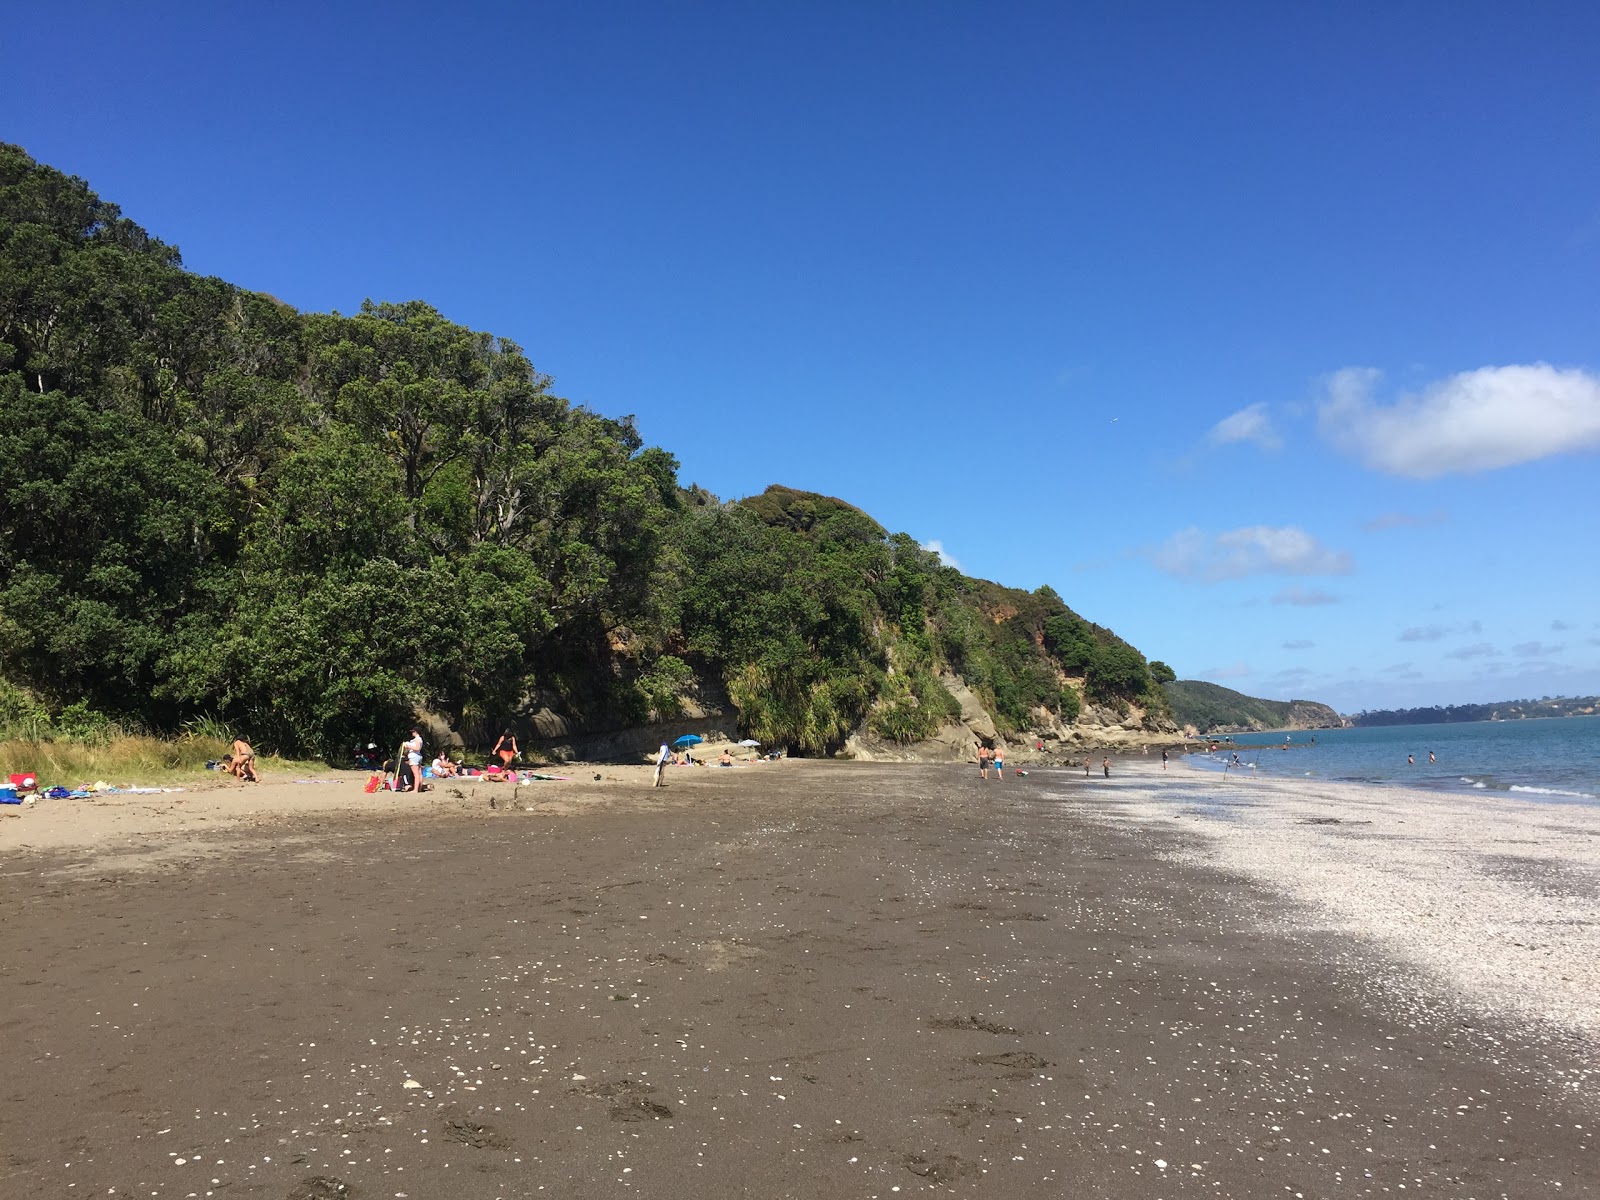 Kaitarakihi Beach'in fotoğrafı geniş plaj ile birlikte